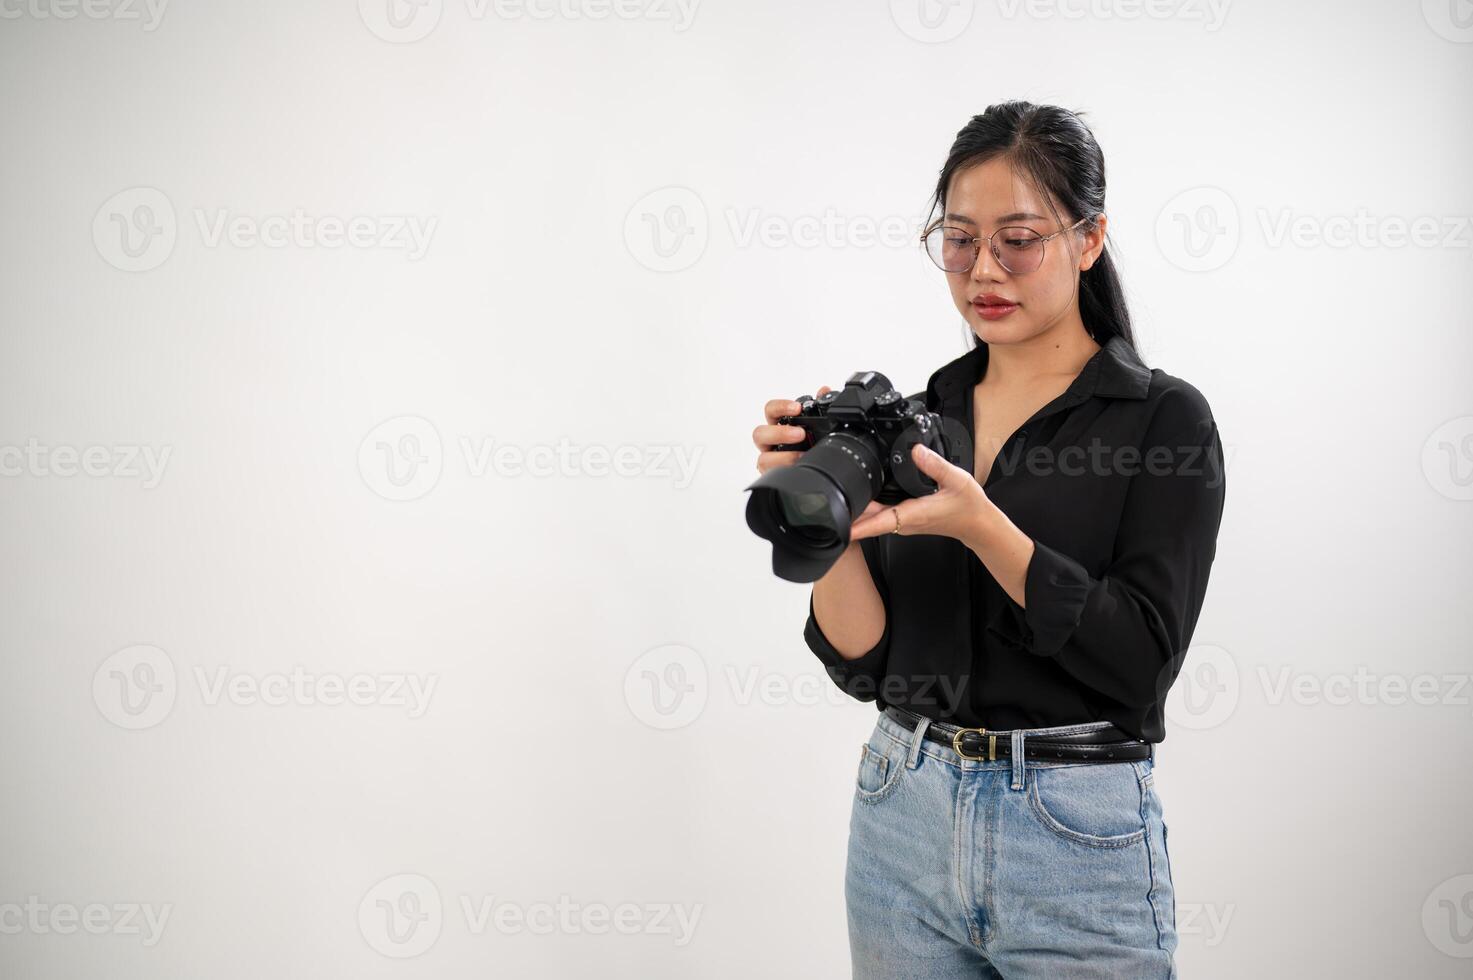 un seguro, experimentado asiático hembra fotógrafo es ajustando su dslr cámara, preparando Sesión de fotos equipo, y trabajando en el estudio.